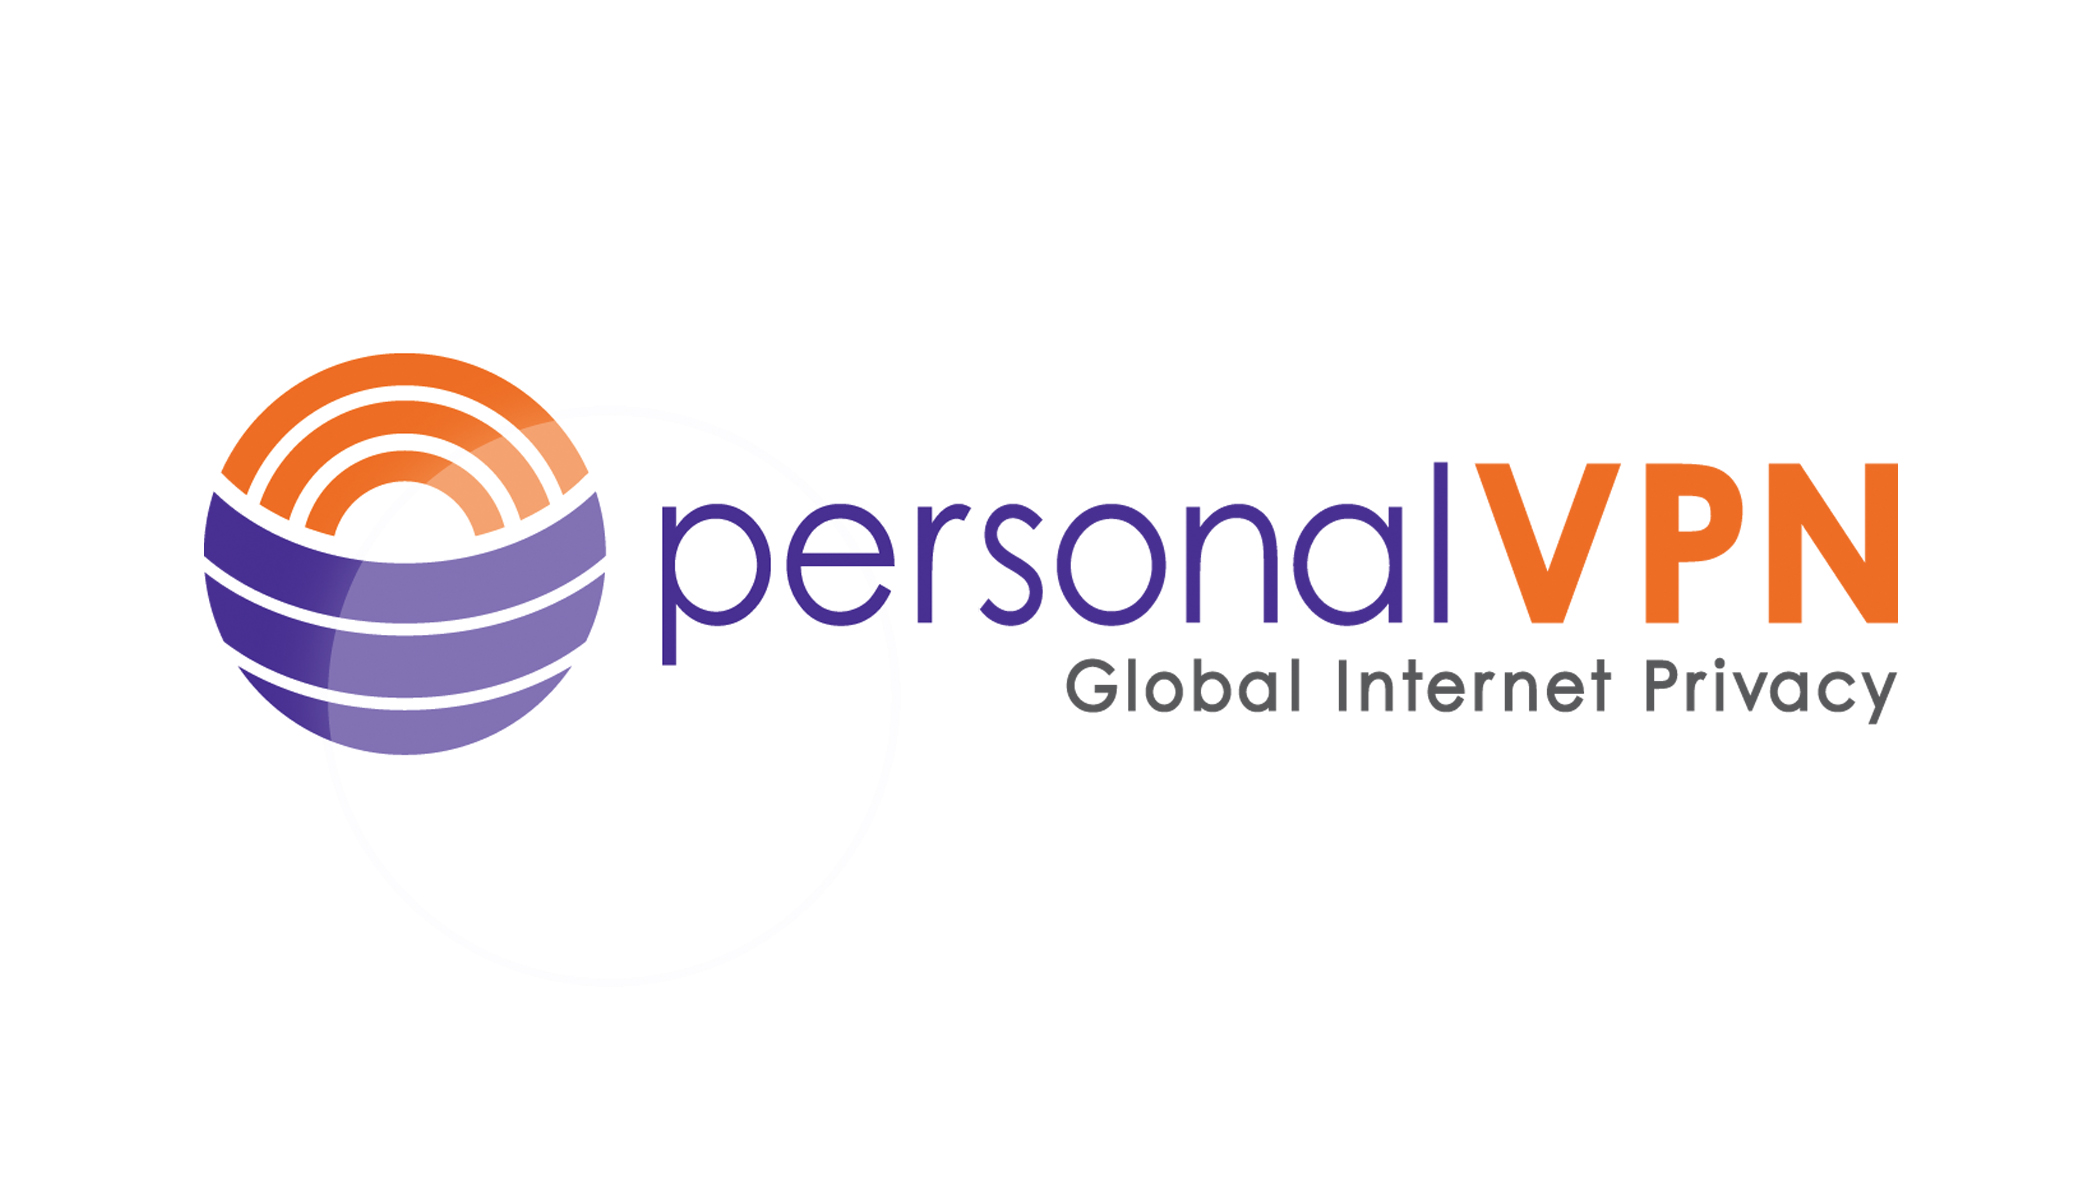 personalVPN_Logos.jpg